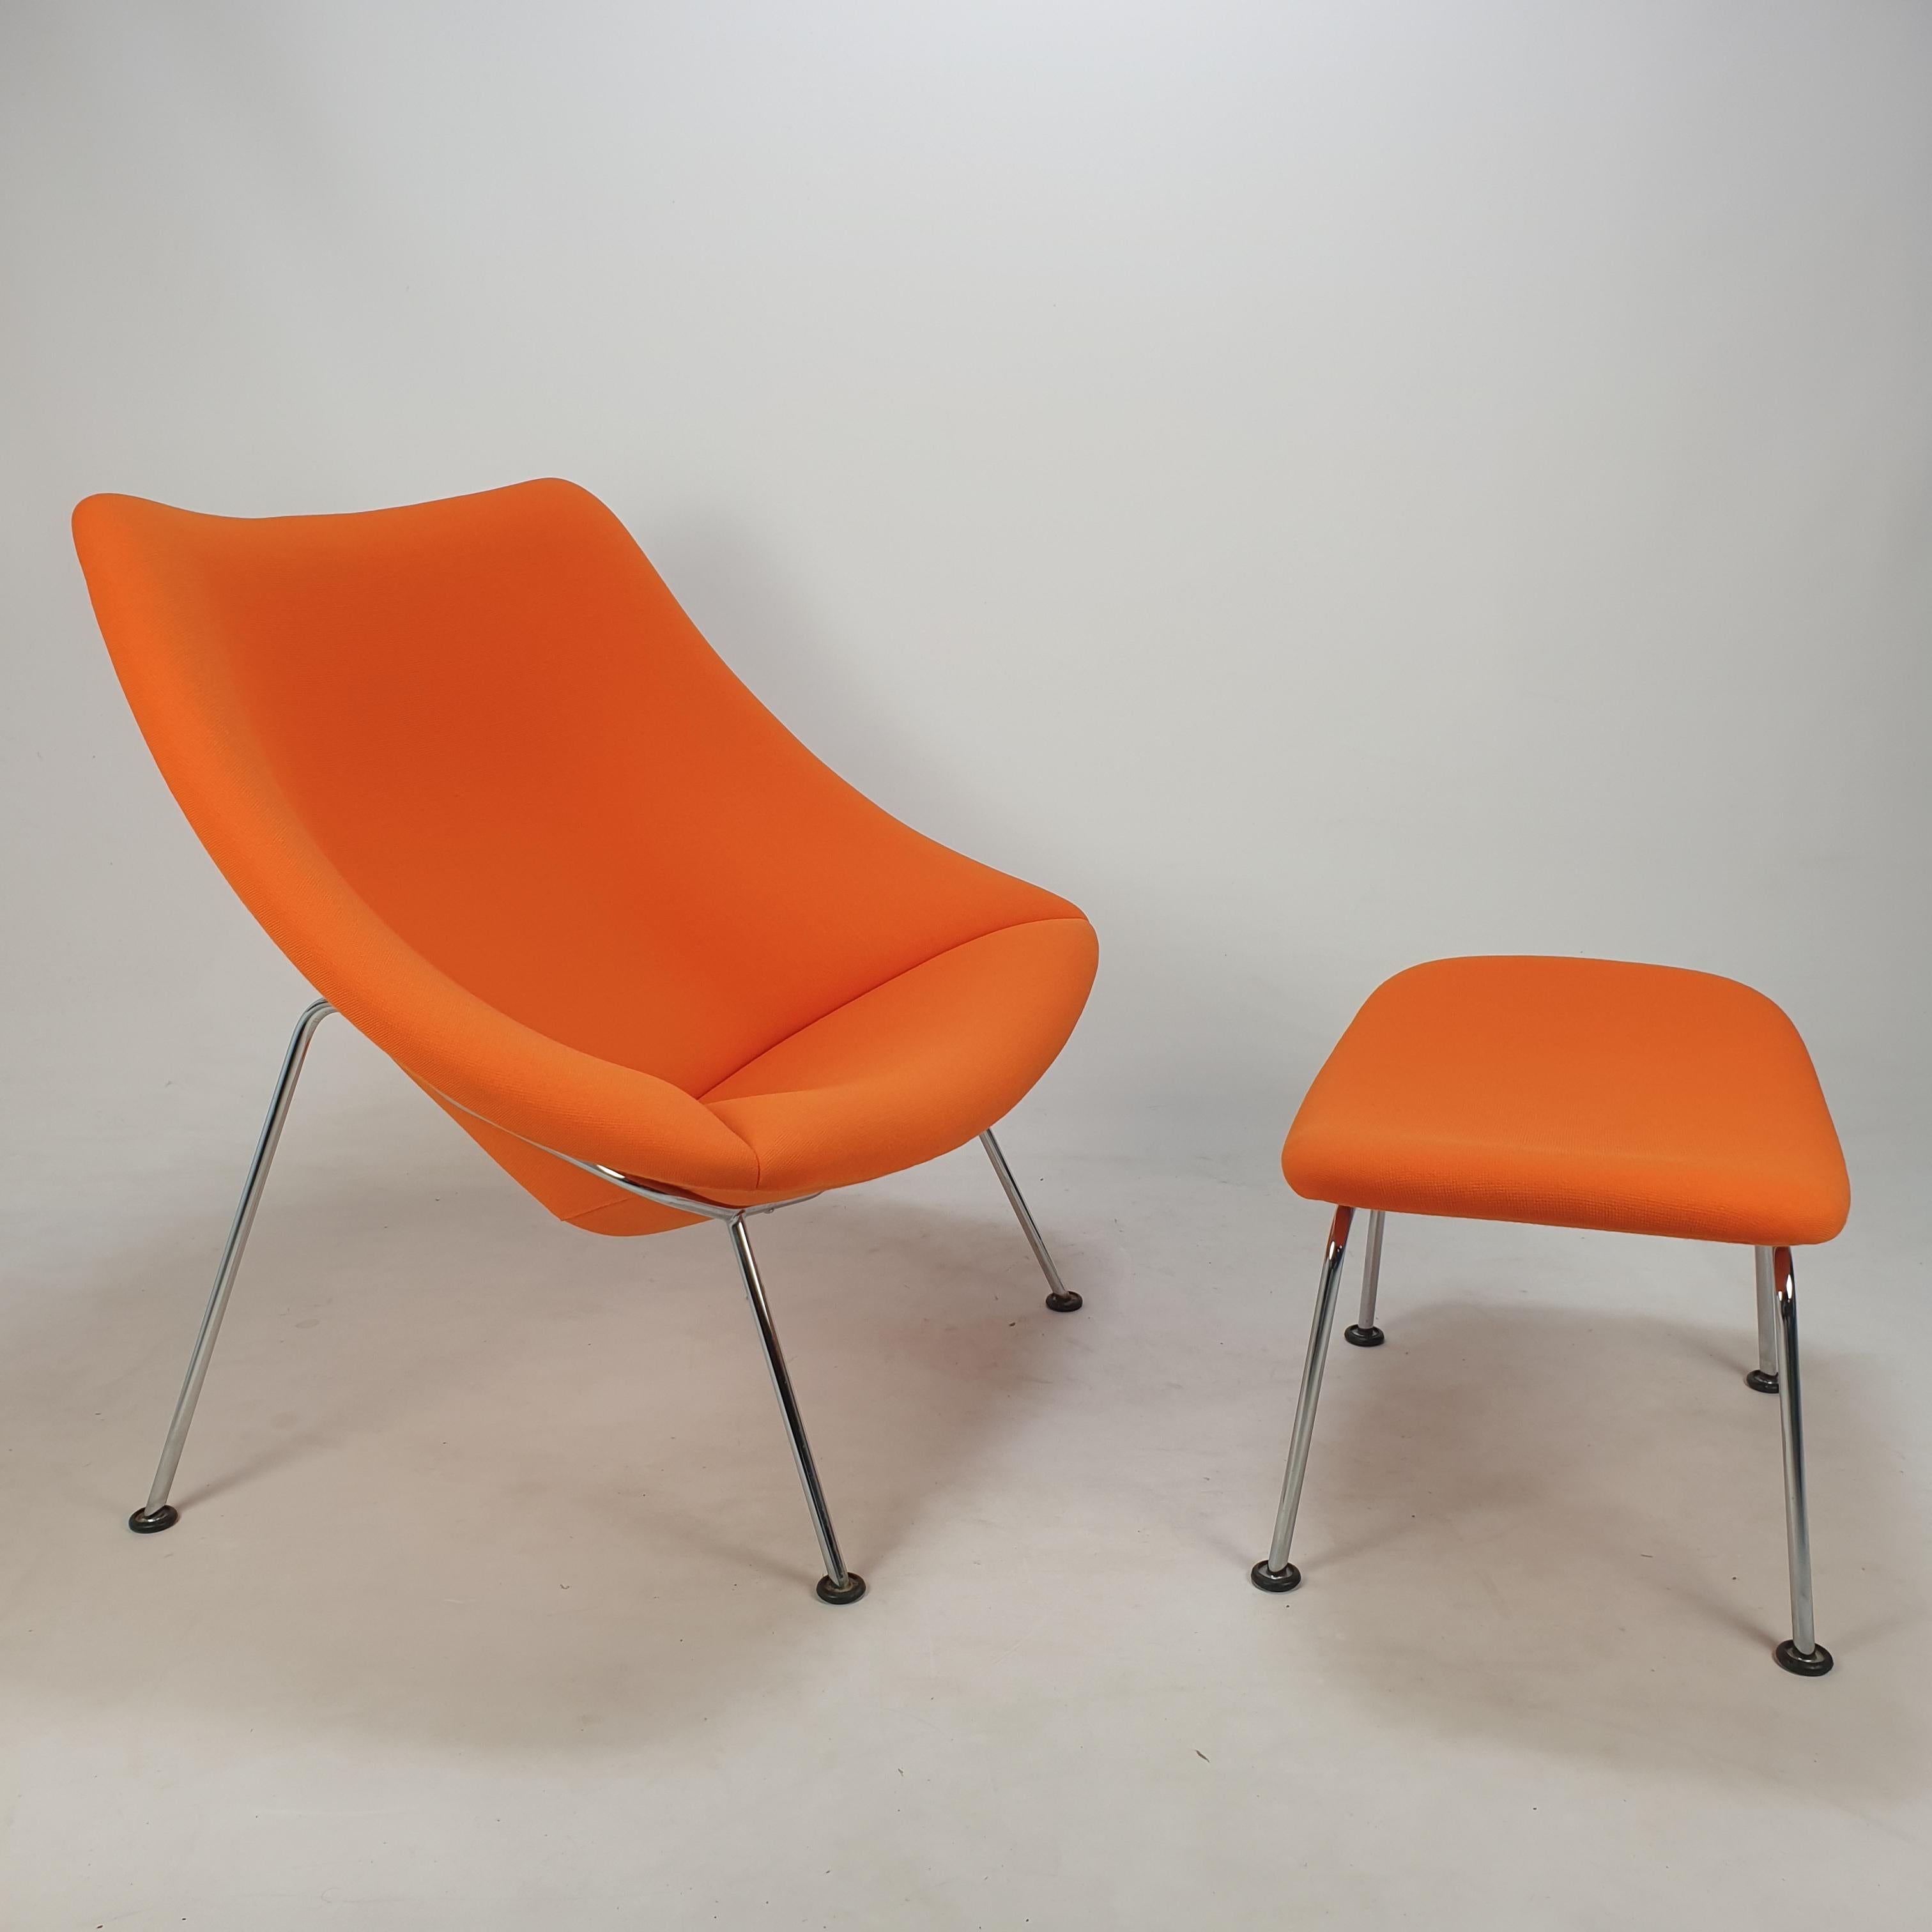 Le célèbre fauteuil Oyster Artifort de Pierre Paulin, le grand modèle avec ottoman. 

Conçu au début des années 60, cet ensemble particulier a été fabriqué dans les années 90. 

Il a des pieds en métal chromé et est recouvert du tissu en laine